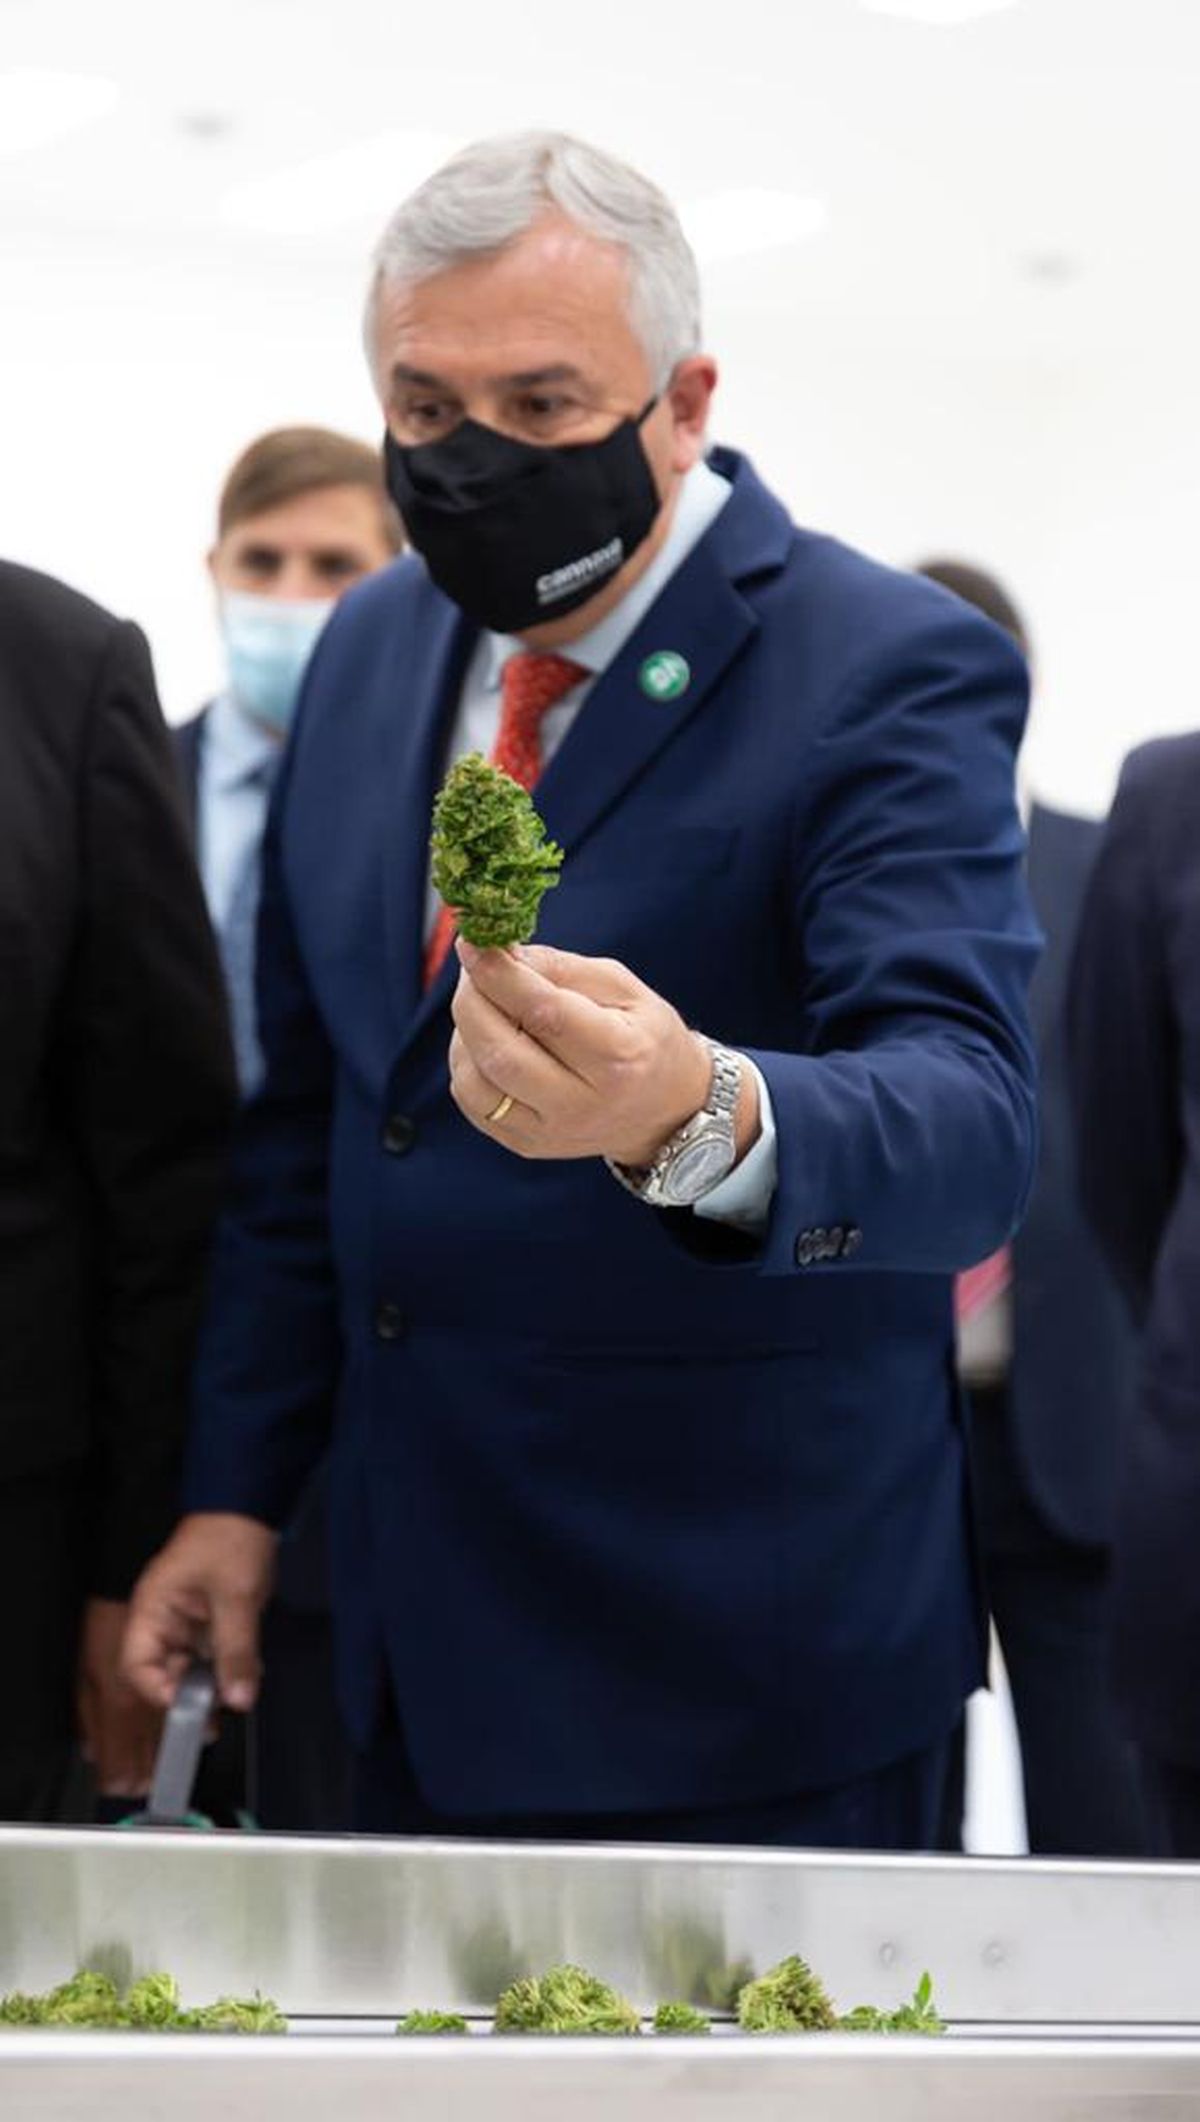 Se inauguró el Complejo de Biotecnología para producir cannabis medicinal a escala industrial en Jujuy